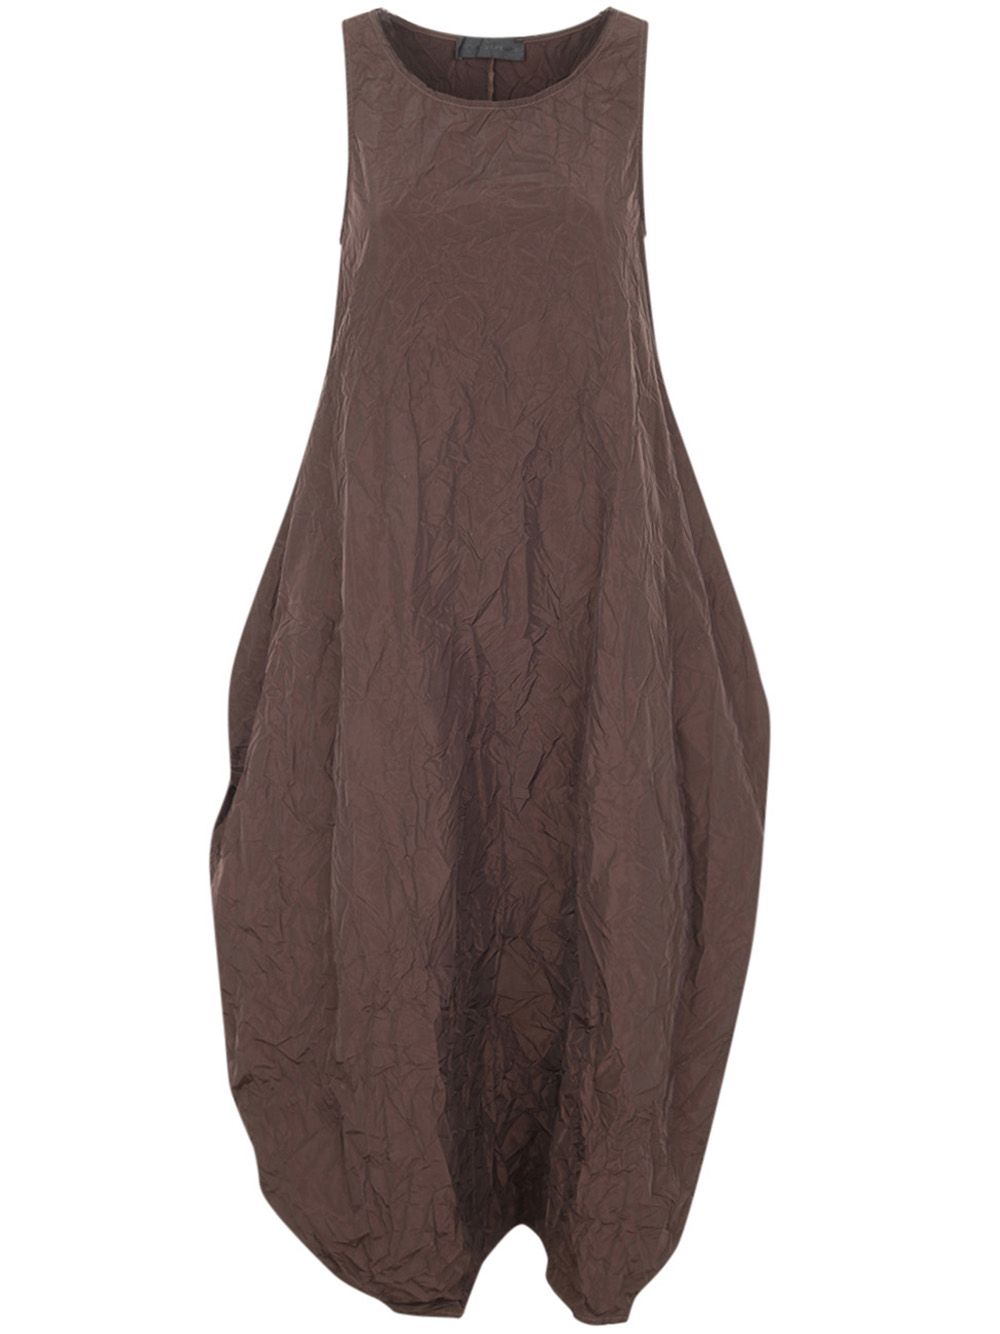 Maria Calderara Marionetta Crinkled Opaque Taffeta Long Dress In Brown